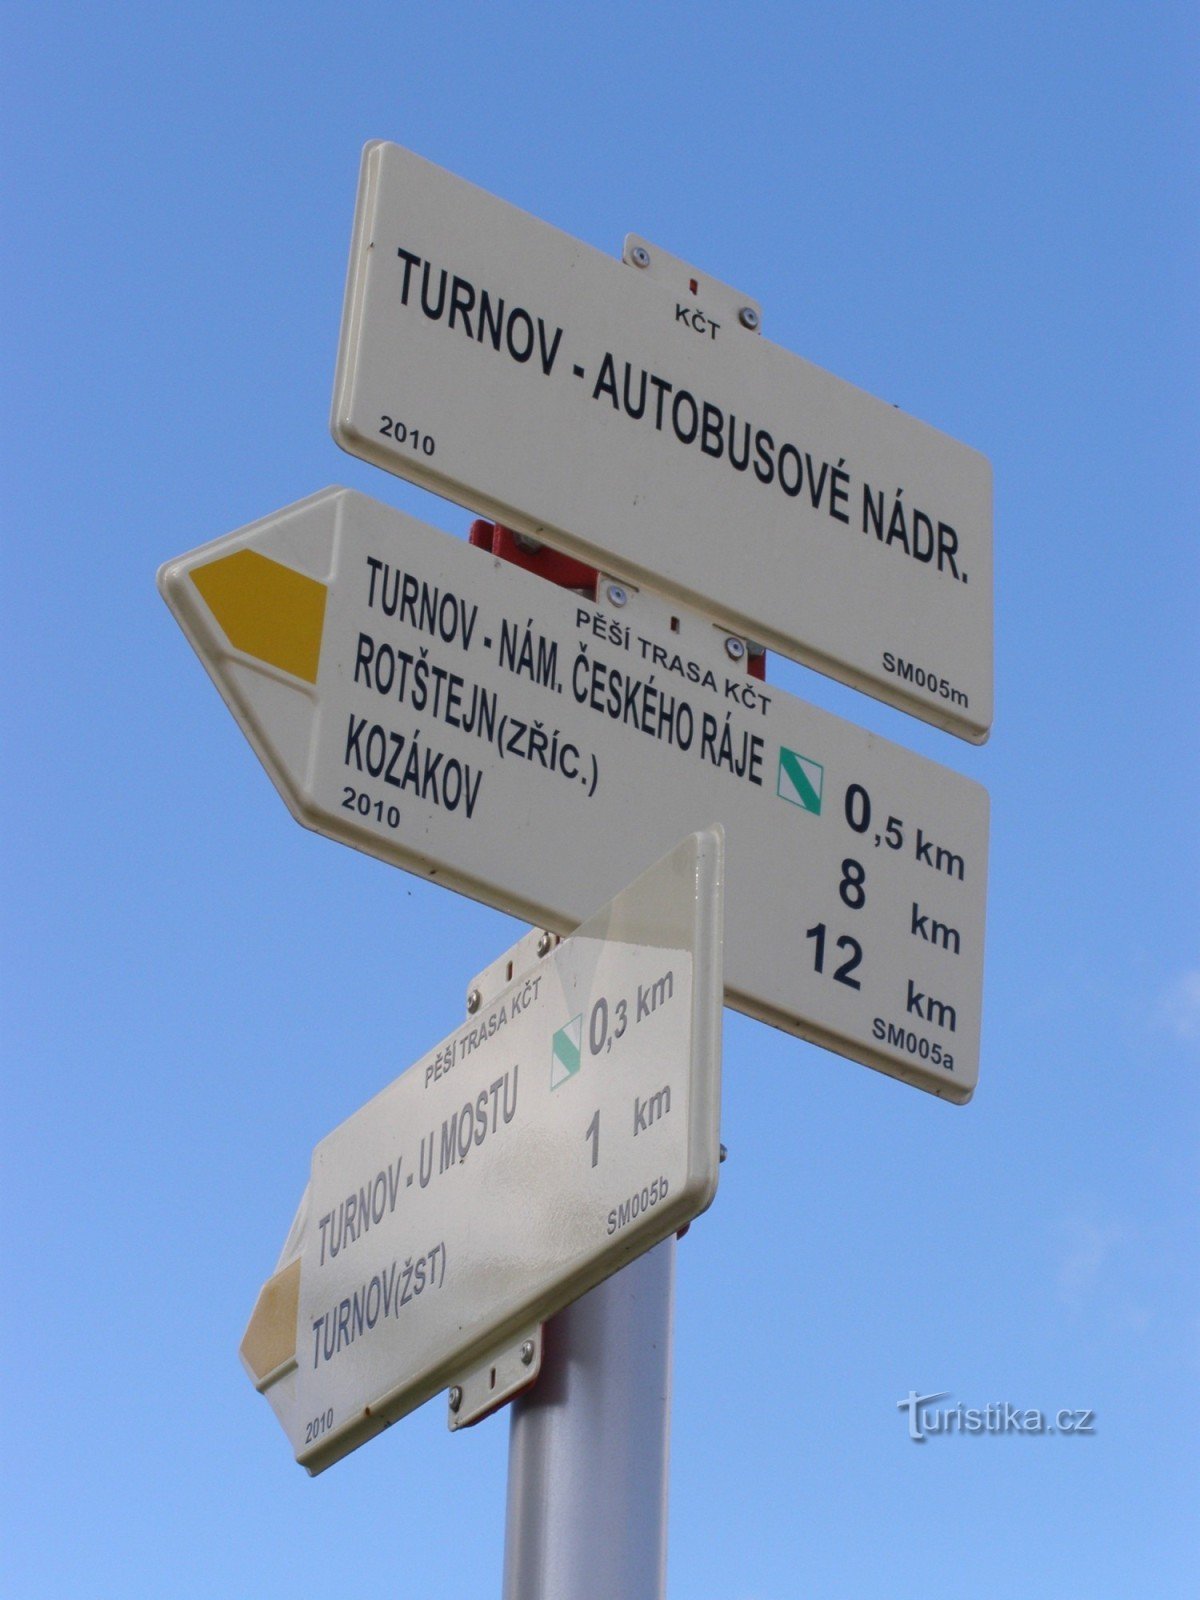 encruzilhada turística Turnov - estação de ônibus